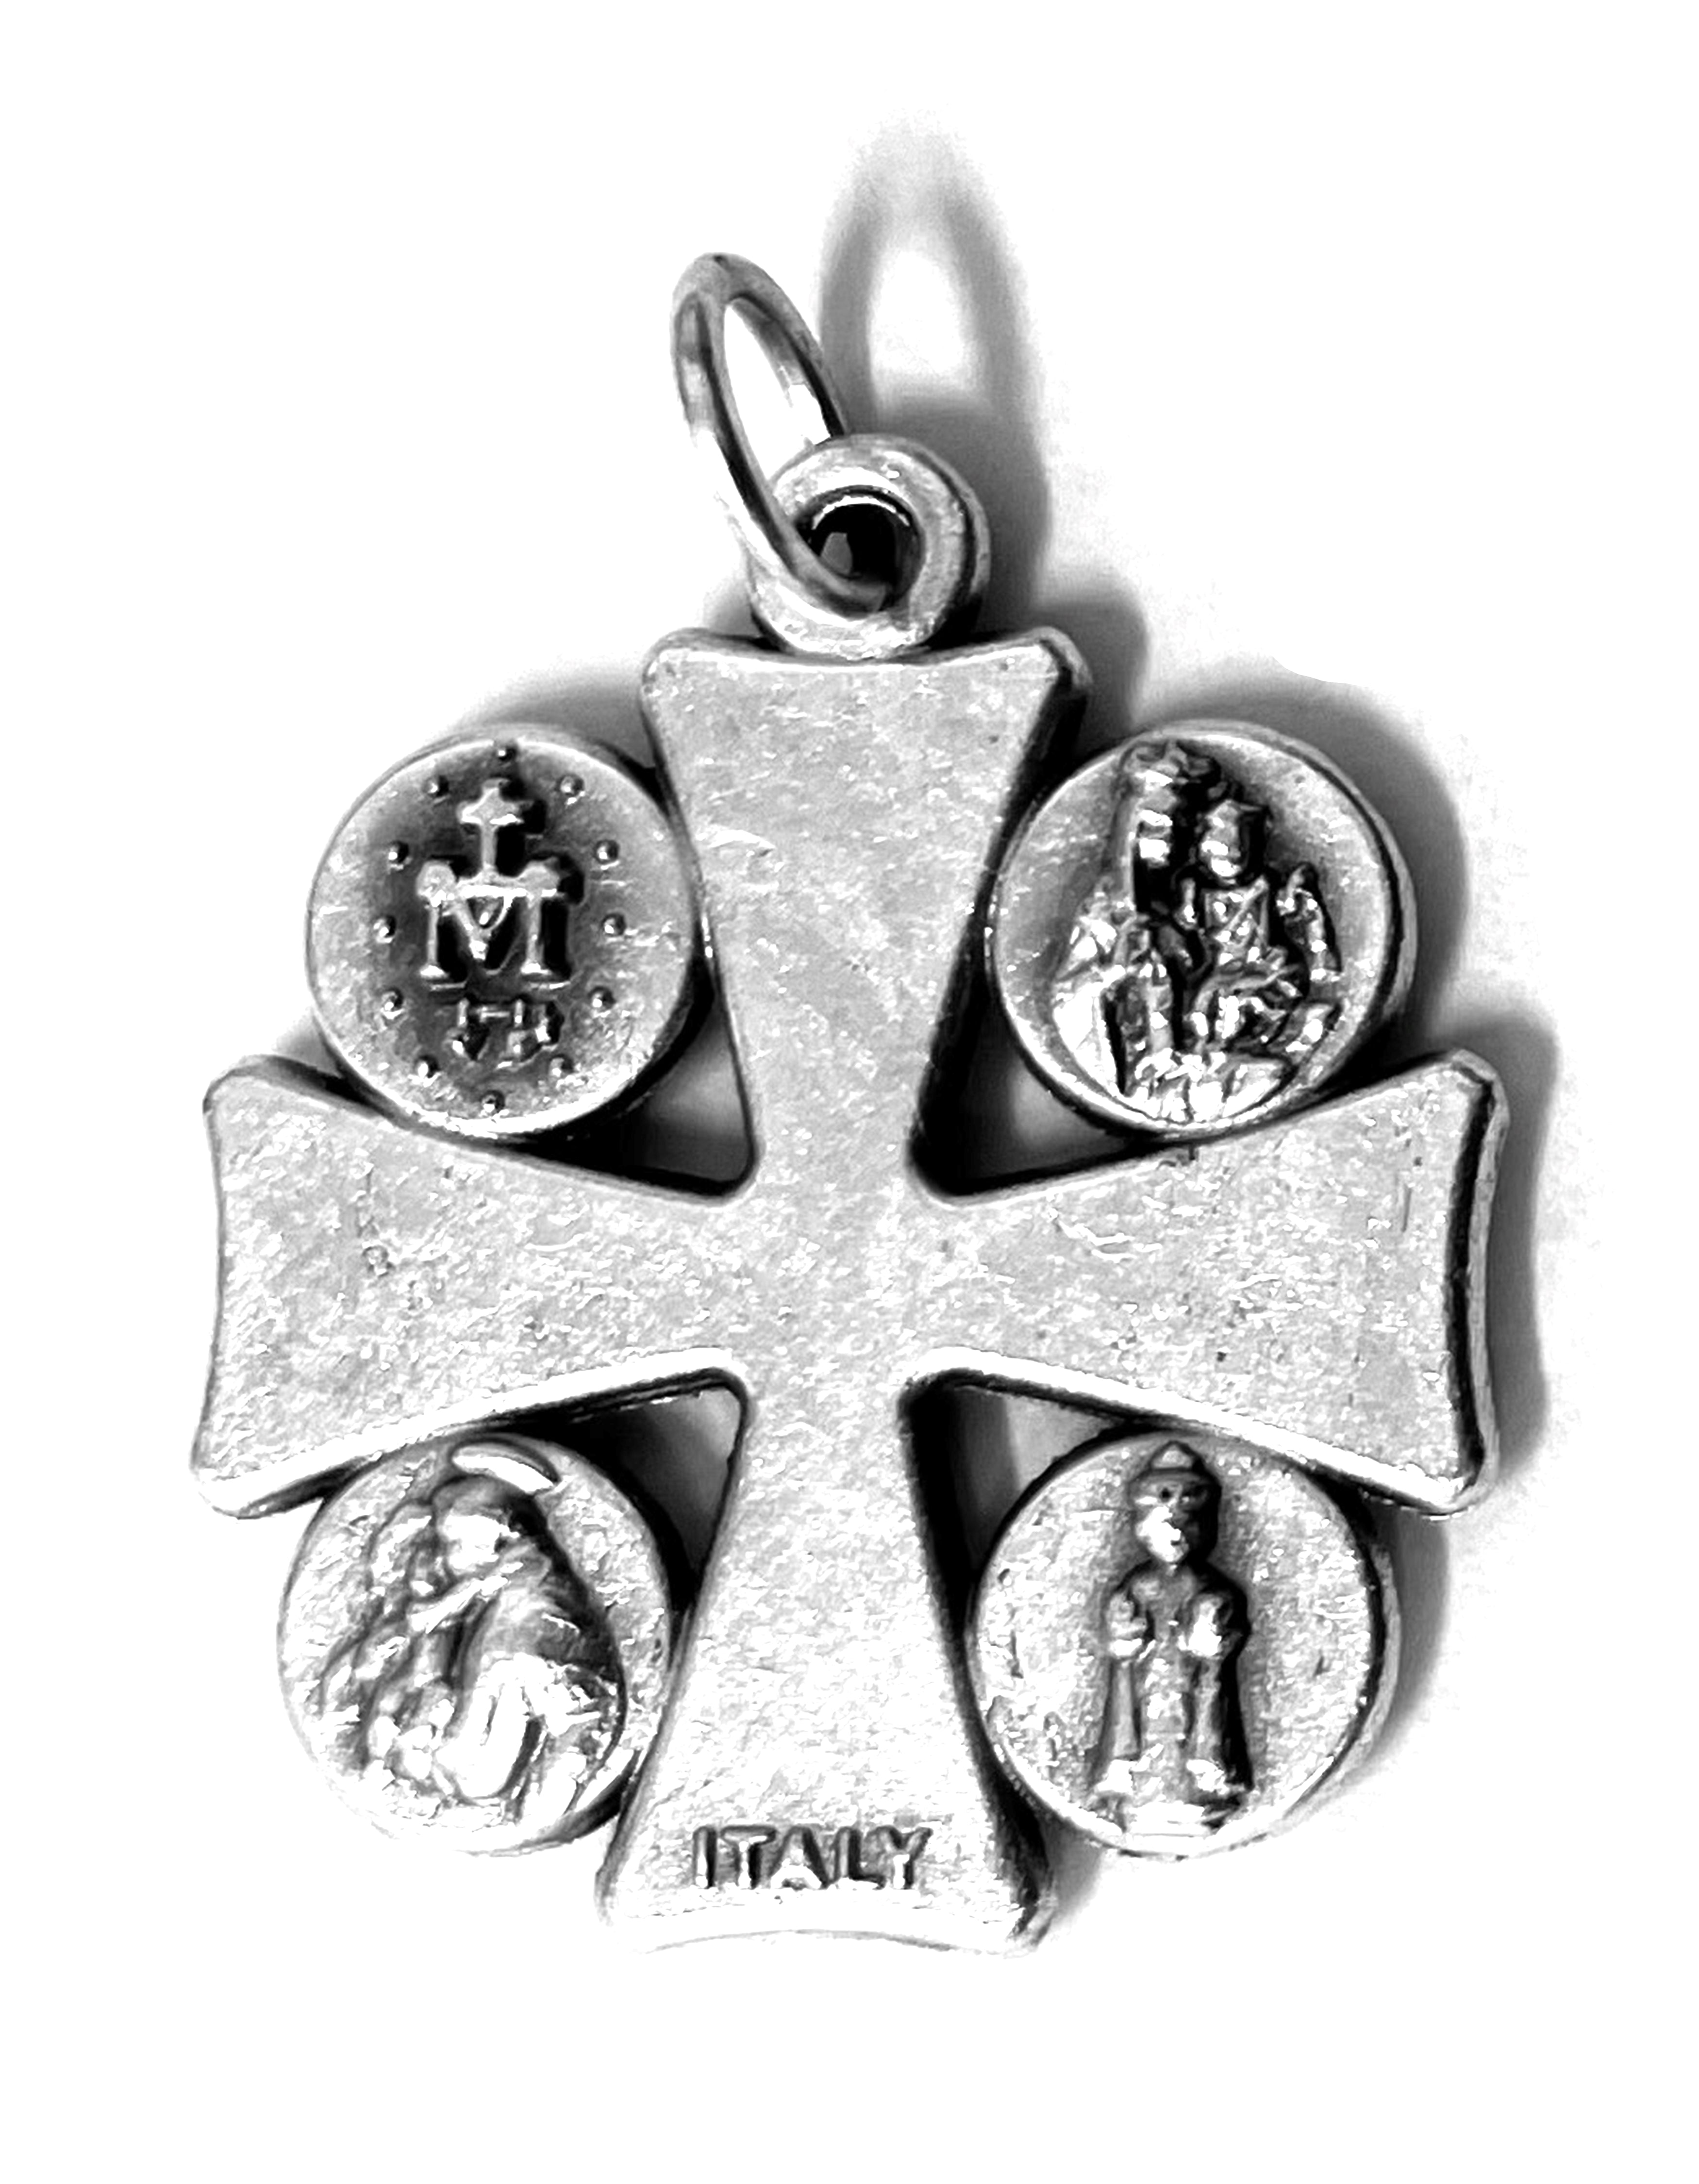 Five-Way JHS Cross Medal 1.0"